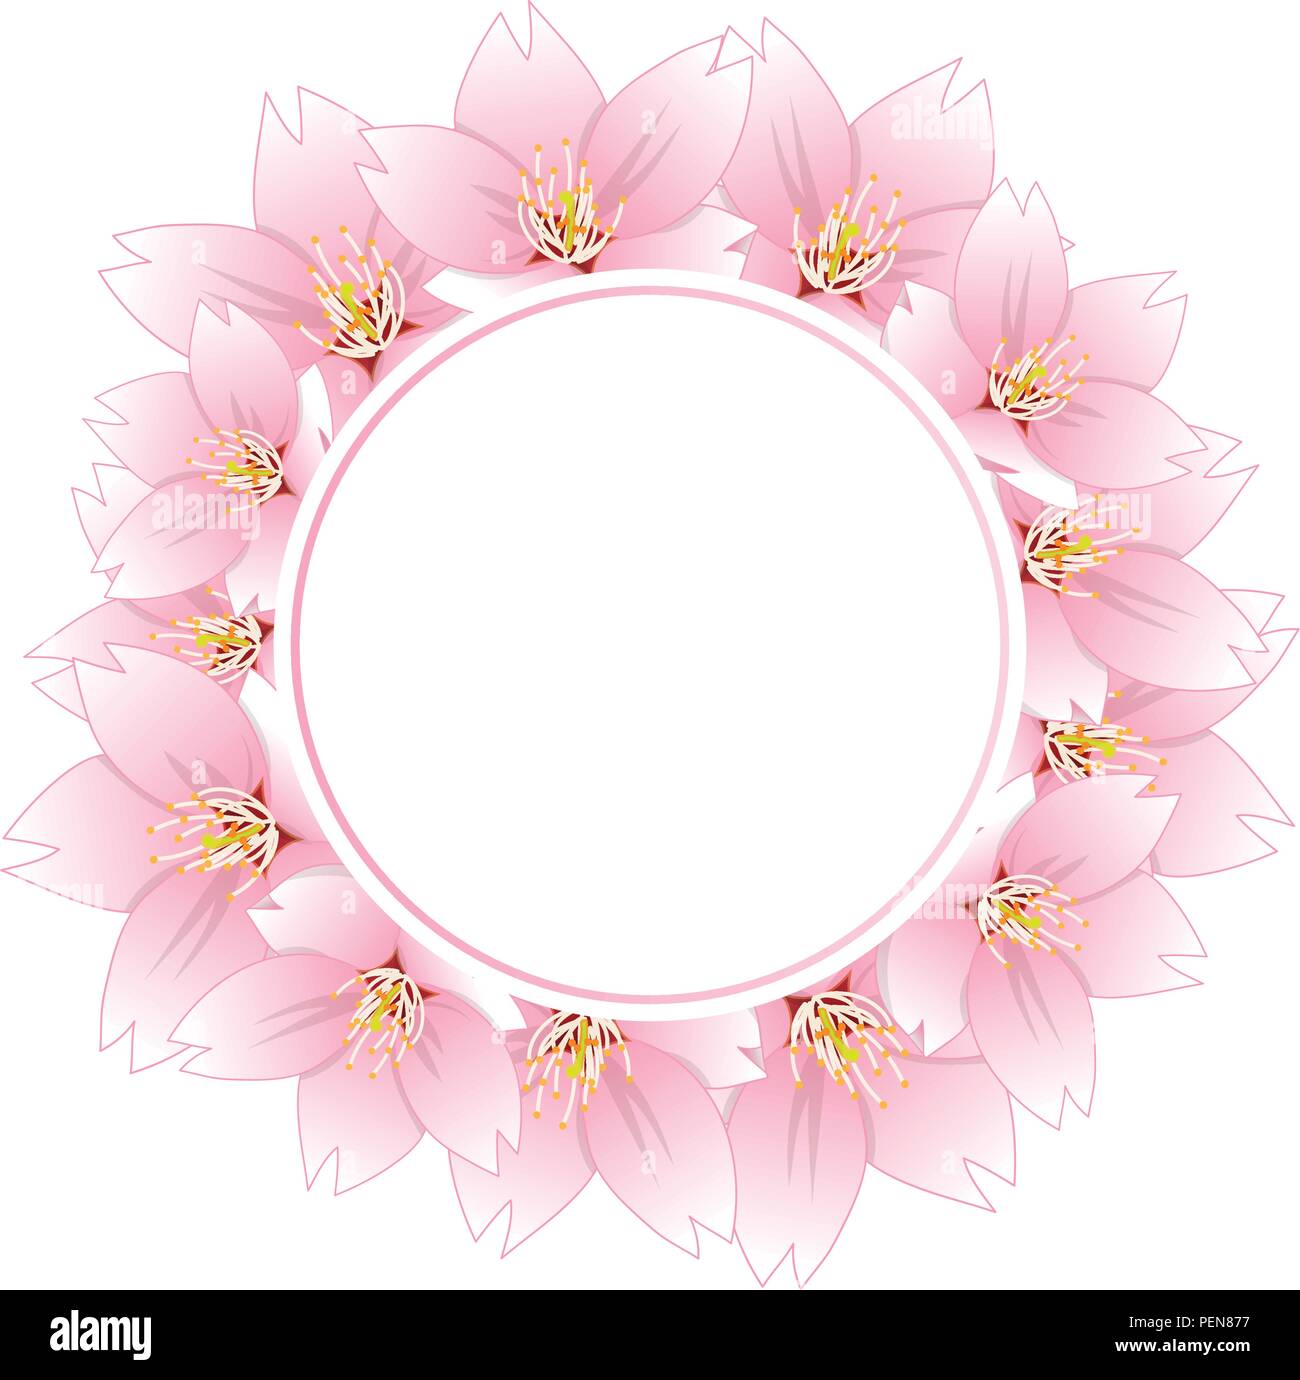 Prunus serrulata - Cherry Blossom, Sakura Banner Kranz isoliert auf weißem Hintergrund. Vector Illustration. Stock Vektor